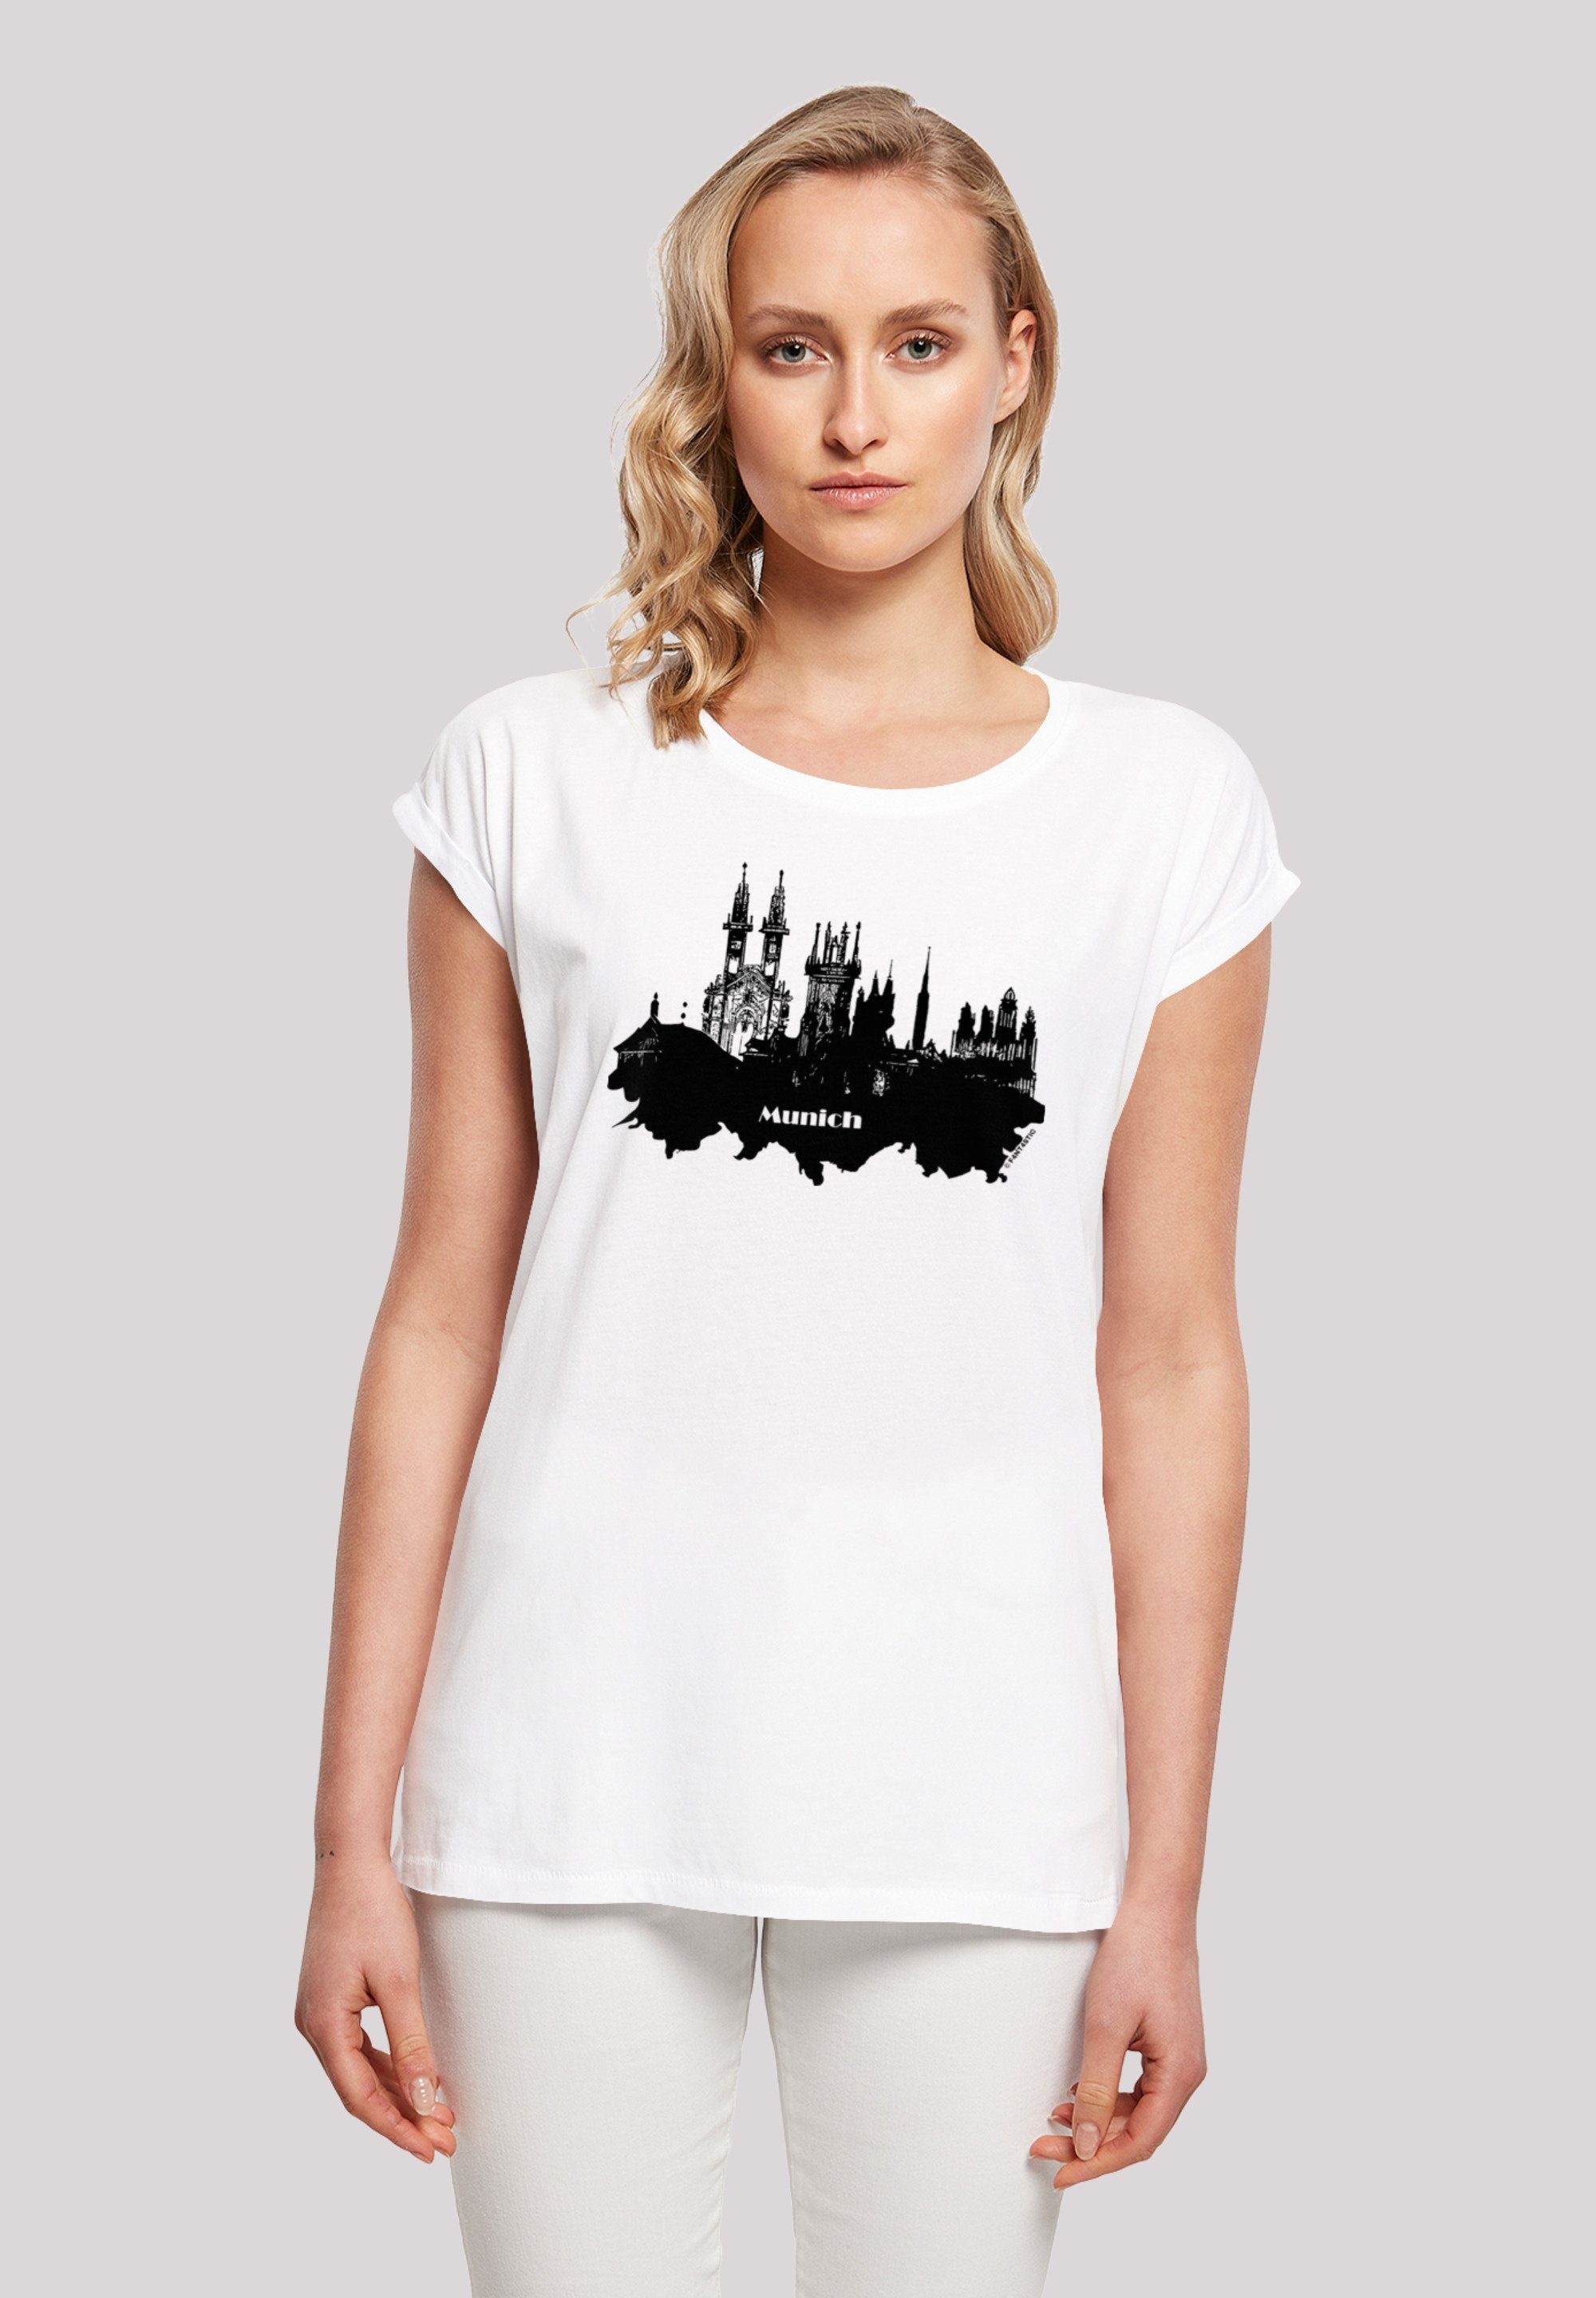 ist - F4NT4STIC groß T-Shirt skyline Model M und Größe 170 Das trägt Cities Print, cm Collection Munich